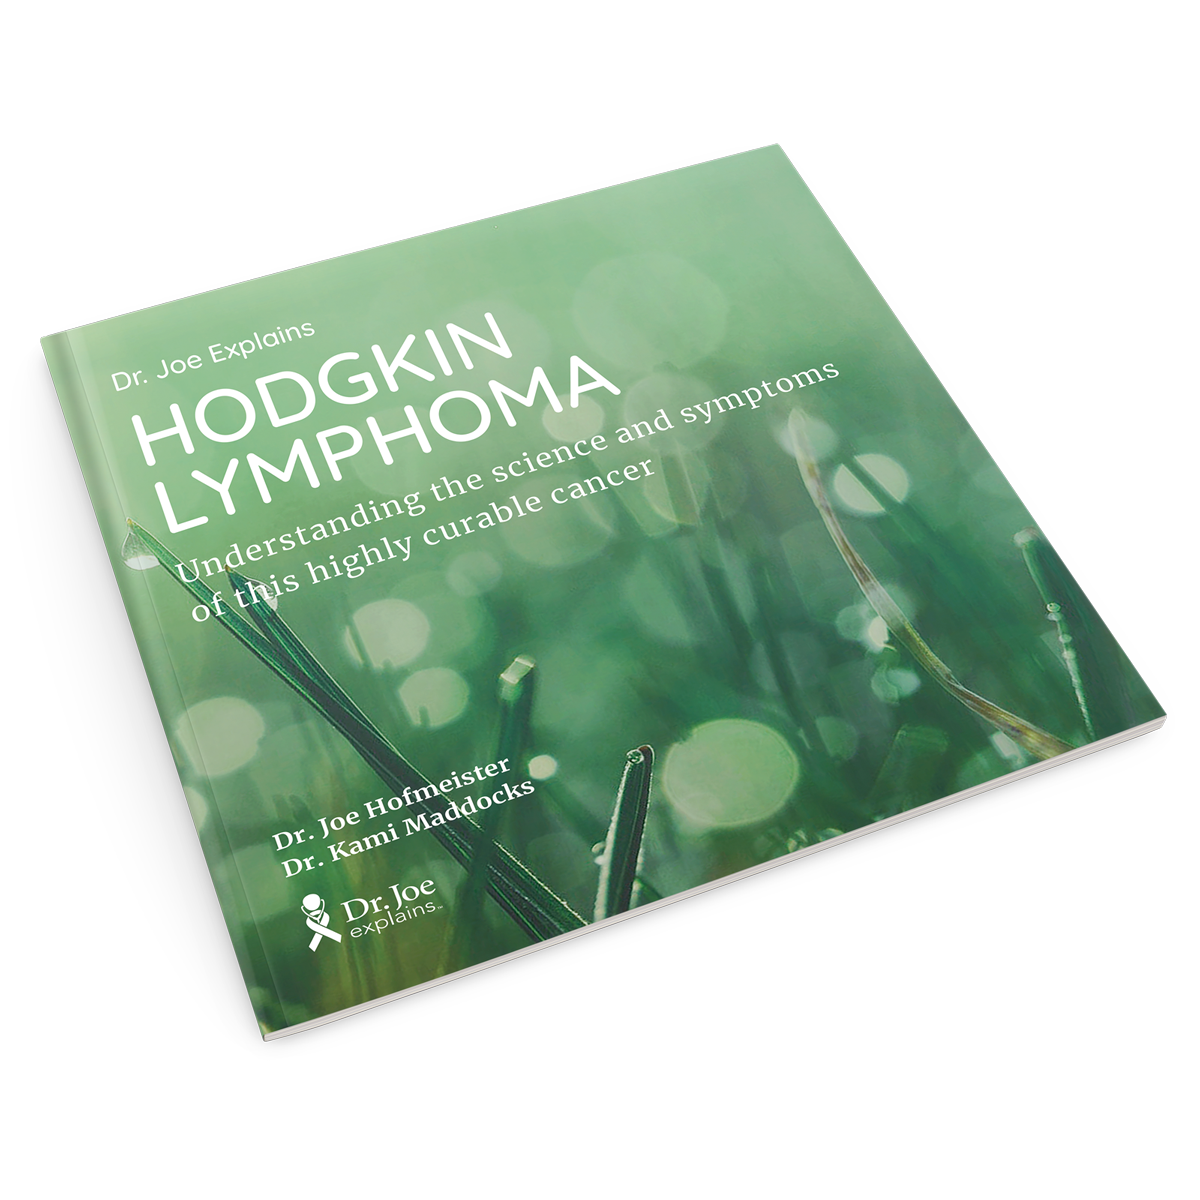 hodgkin lymphoma diagnosis book bundle